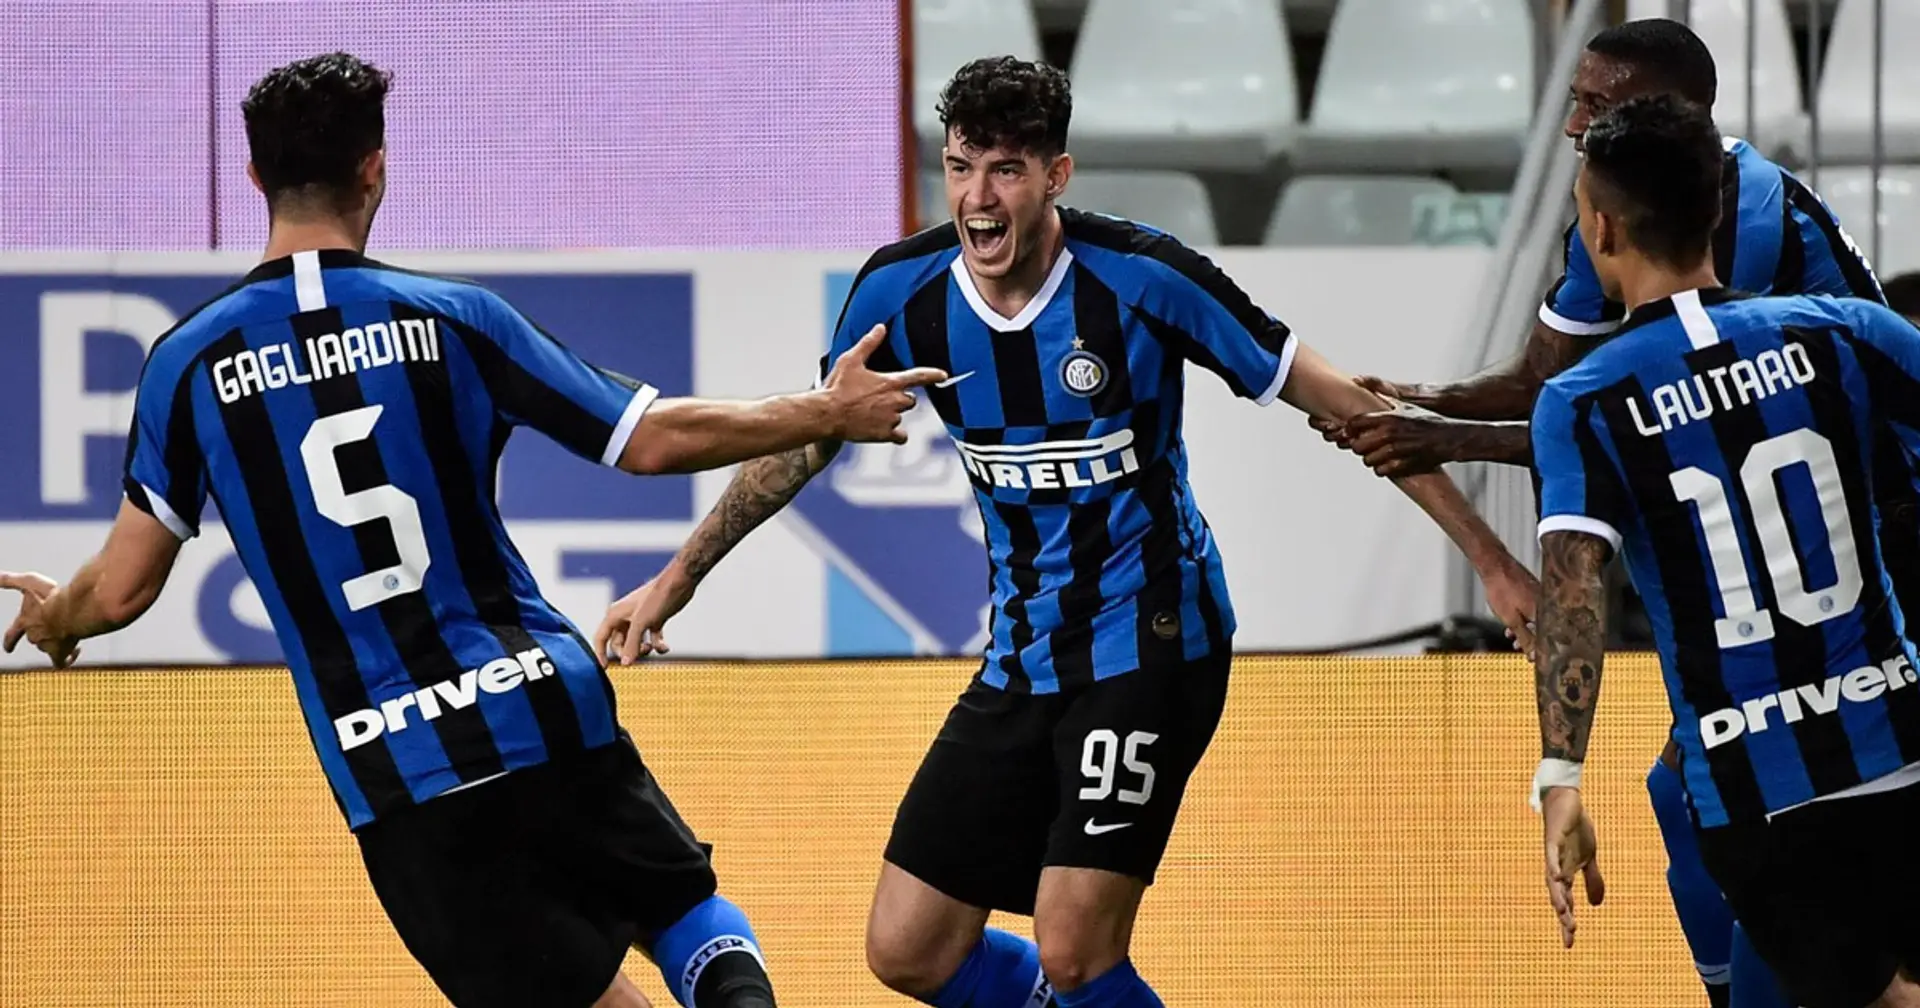 L'Inter soffre, ma negli ultimi cinque minuti ribalta la gara: il match riassunto in 5 punti chiave